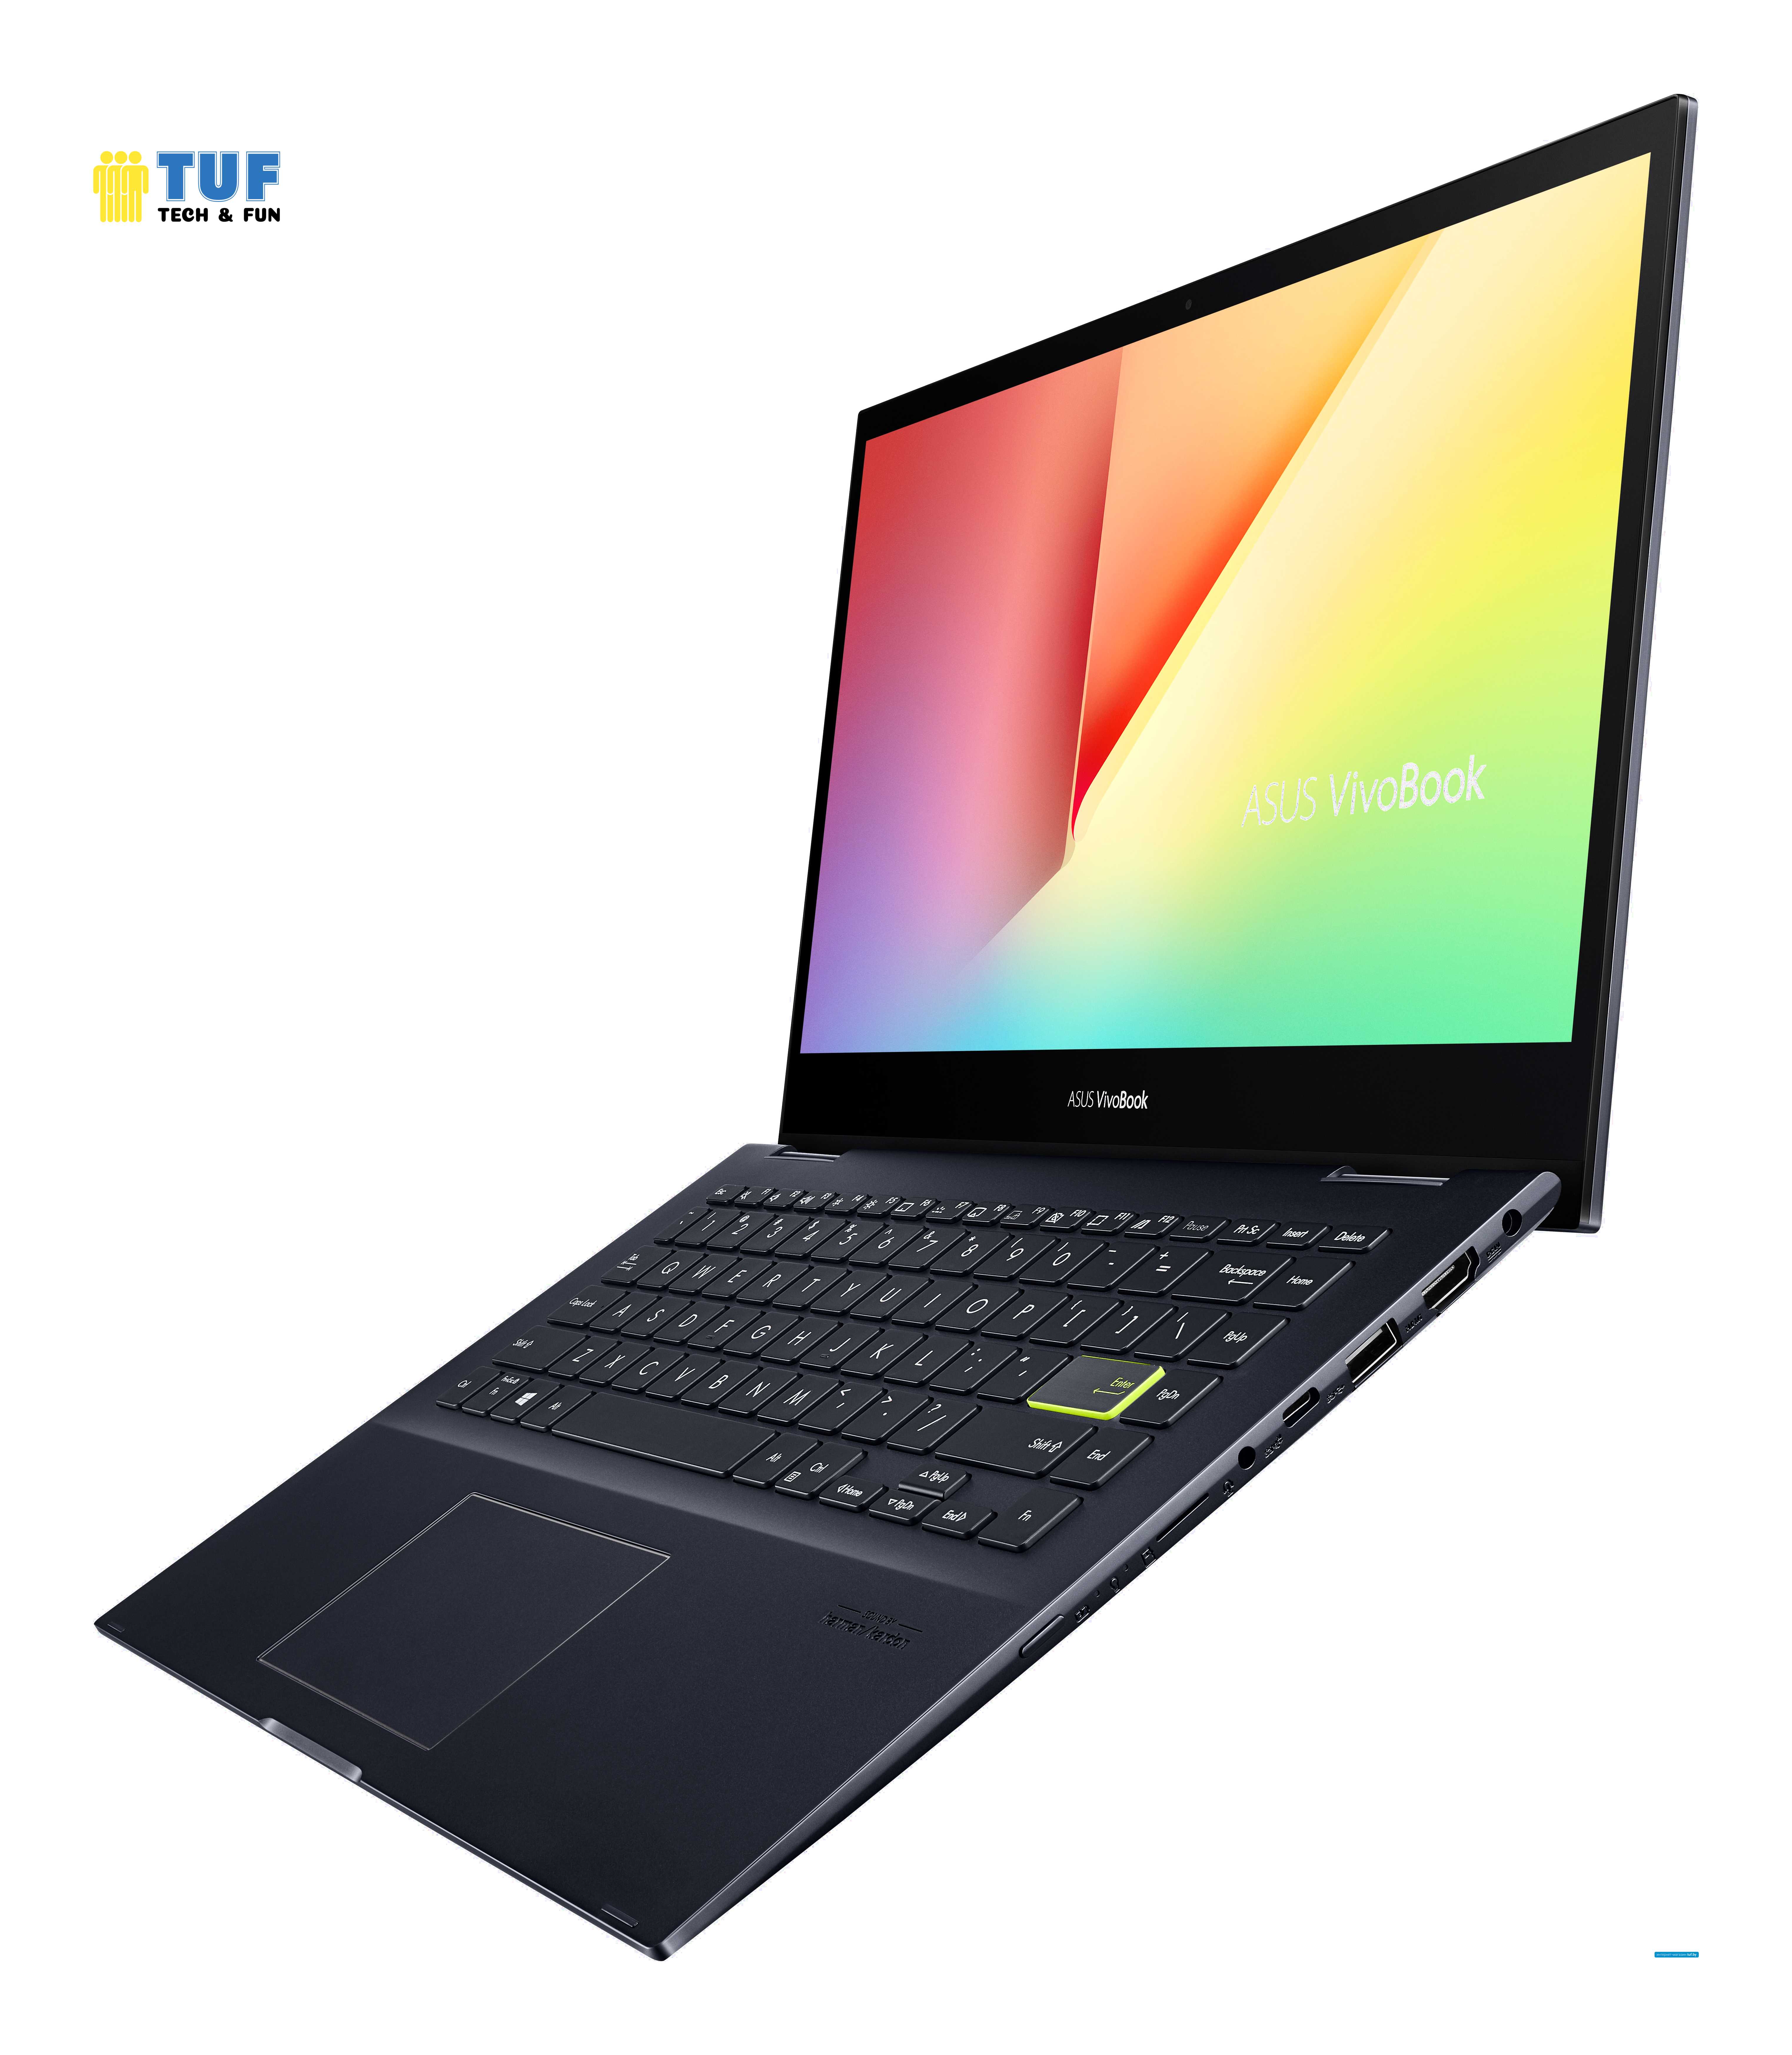 Ноутбук 2-в-1 ASUS VivoBook Flip 14 TM420UA-EC048